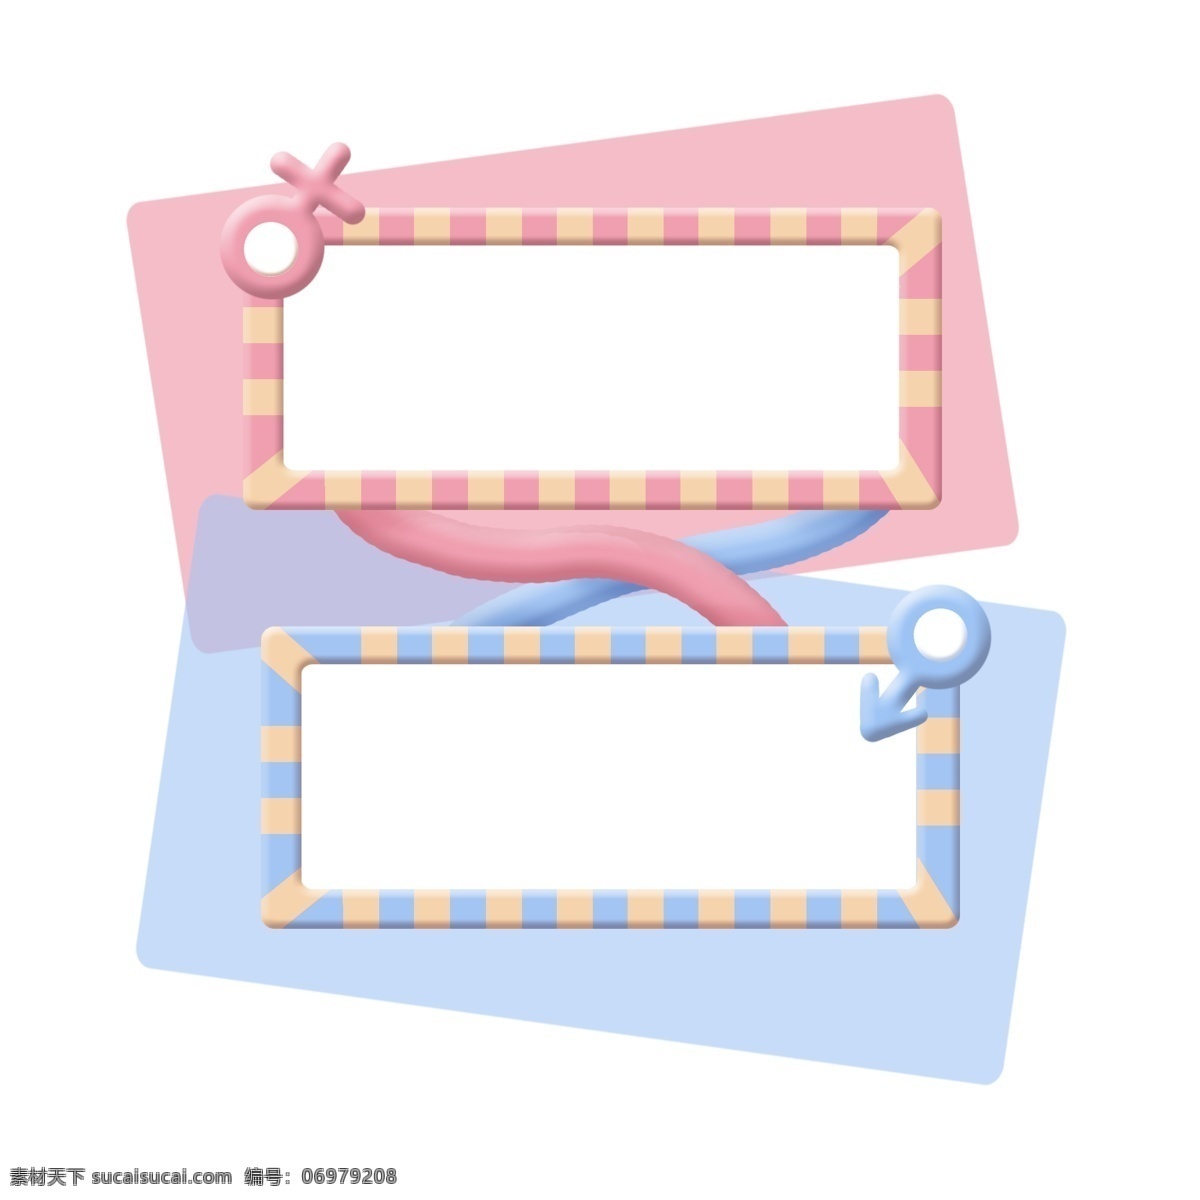 粉色 蓝色 相框 装饰 粉色相框 蓝色相框 相框装饰 符号 条纹边框 卡通相框 卡通边框 可爱的边框